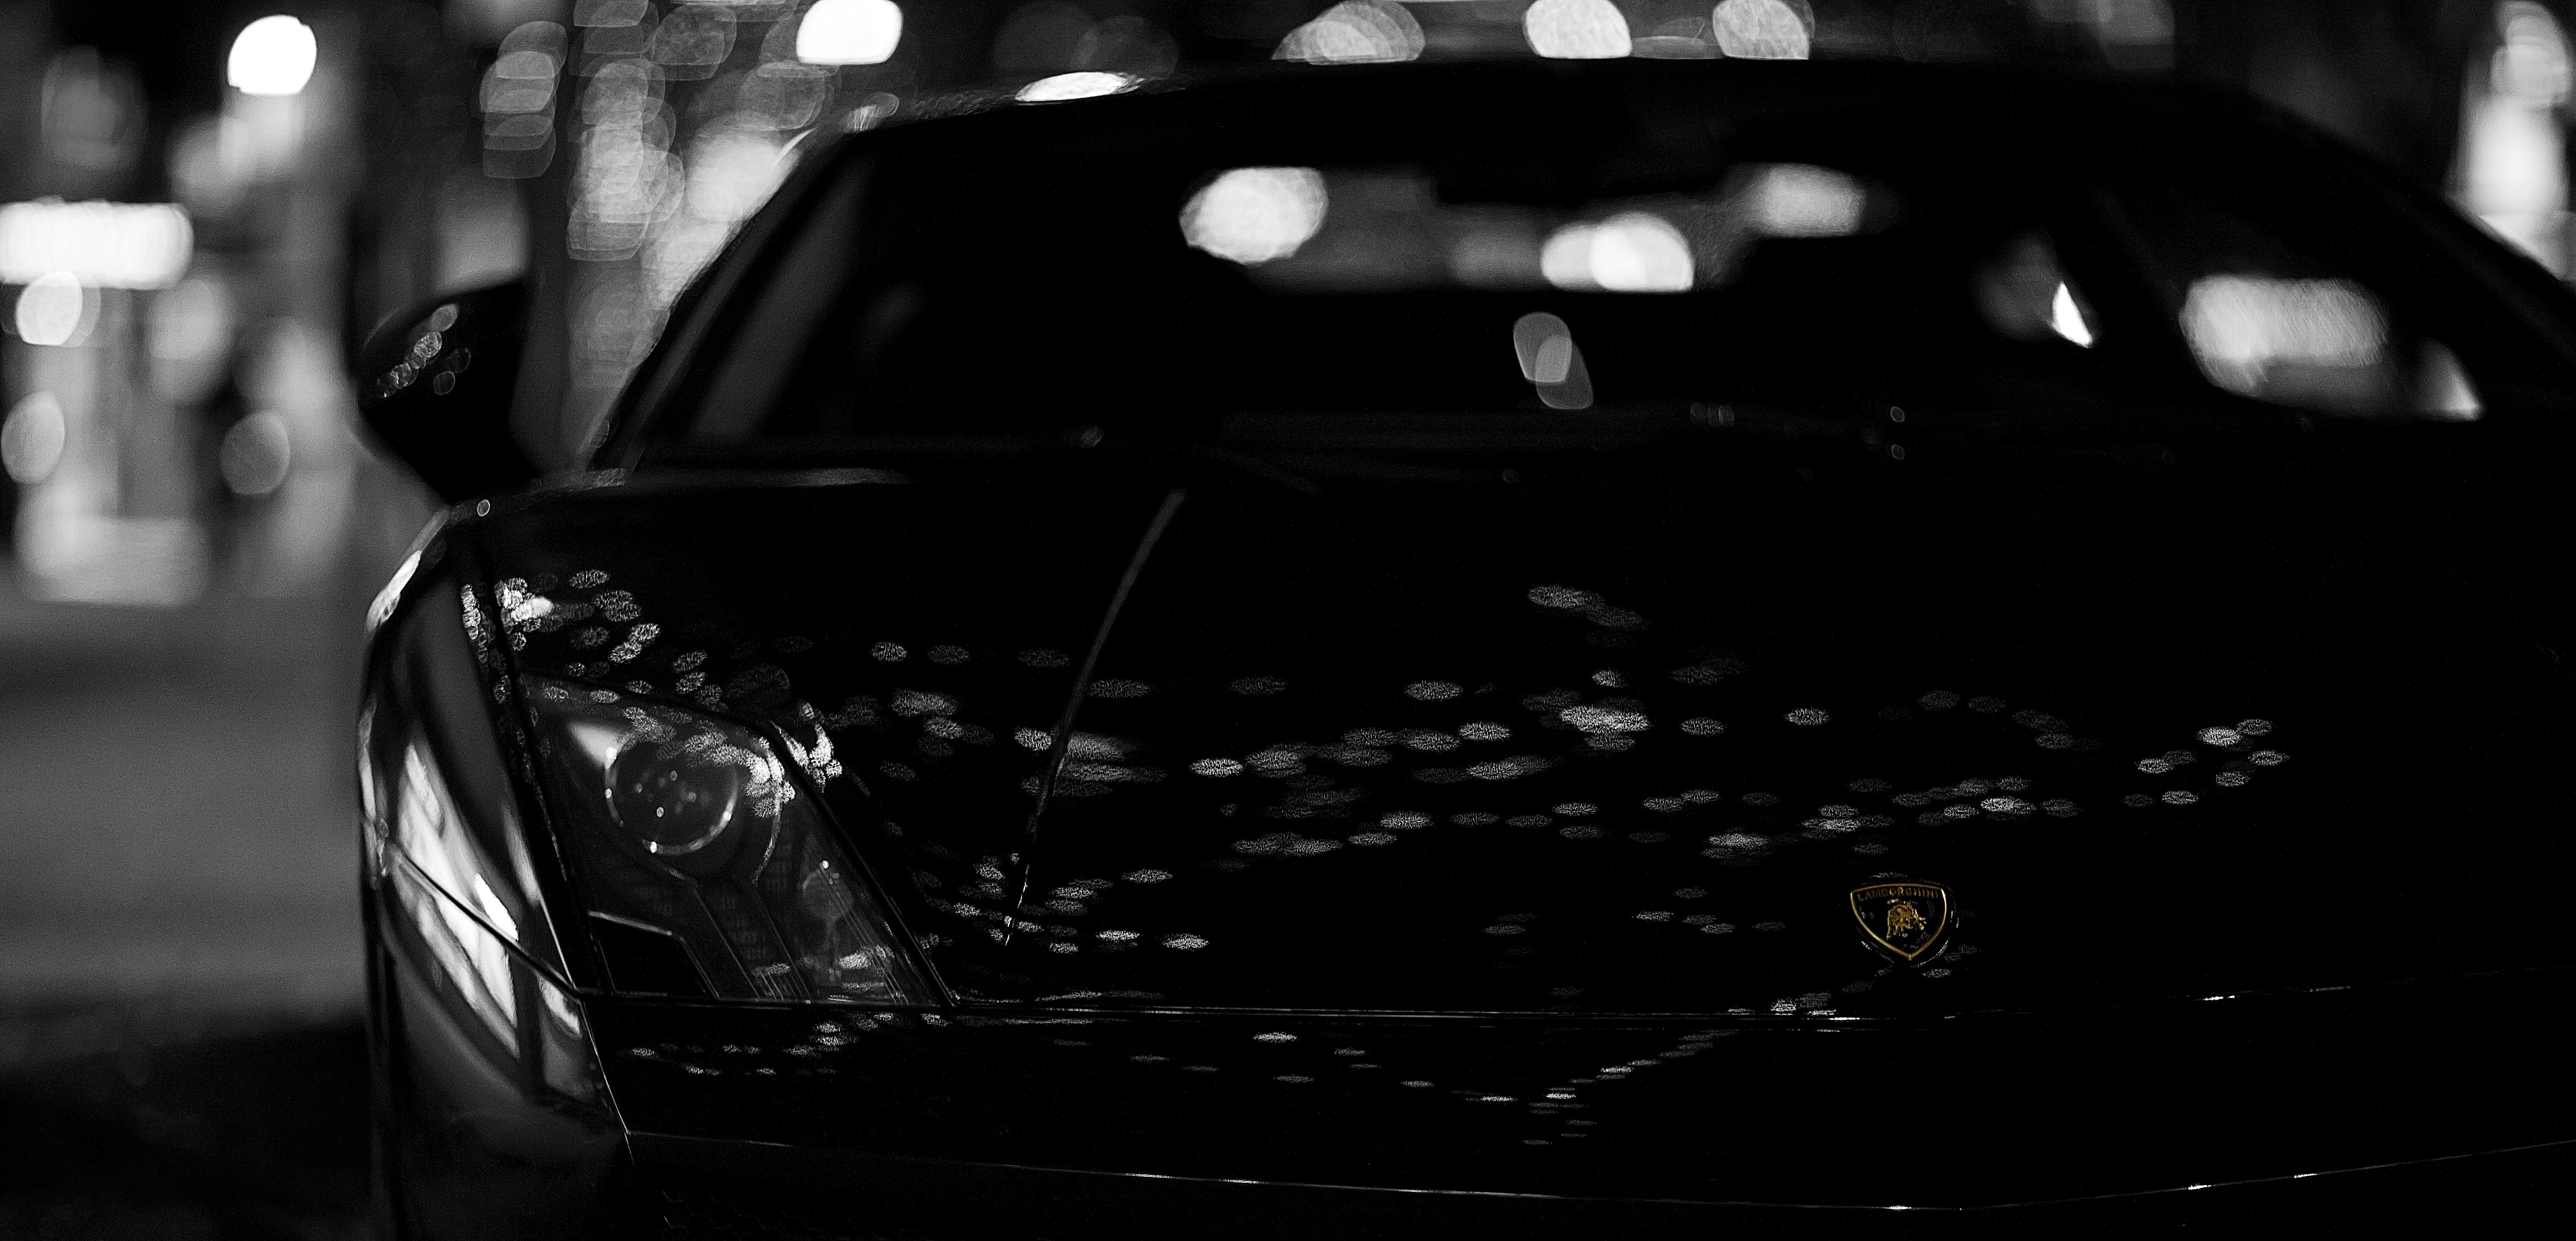 General 5616x2706 car Lamborghini vehicle monochrome black cars